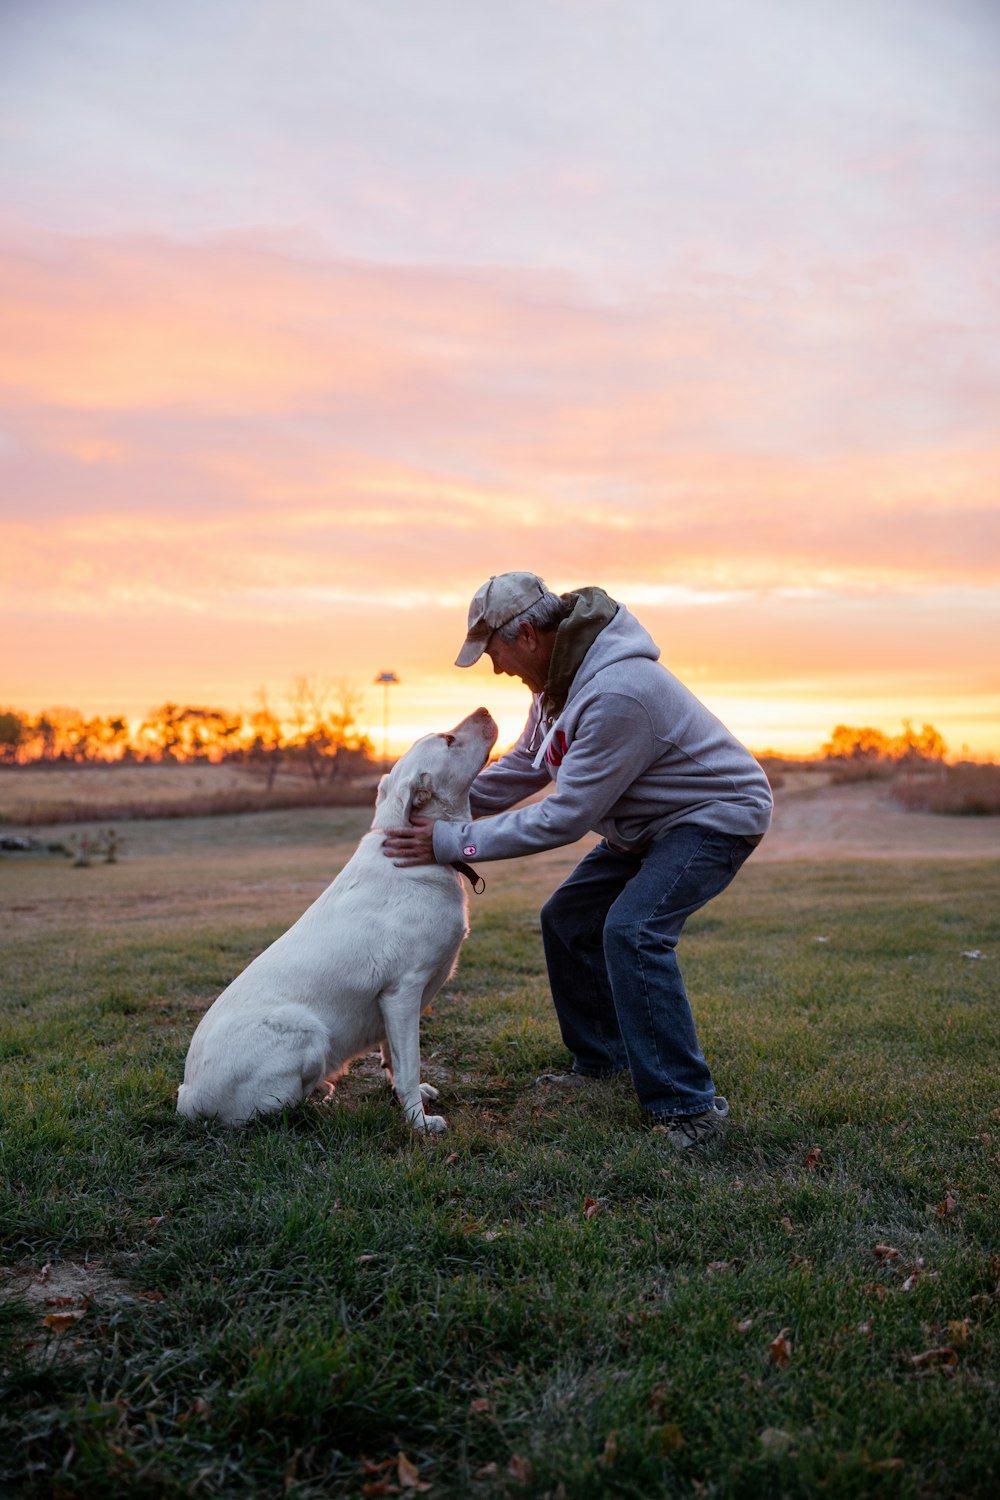 Una persona y un perro jugando en un campo